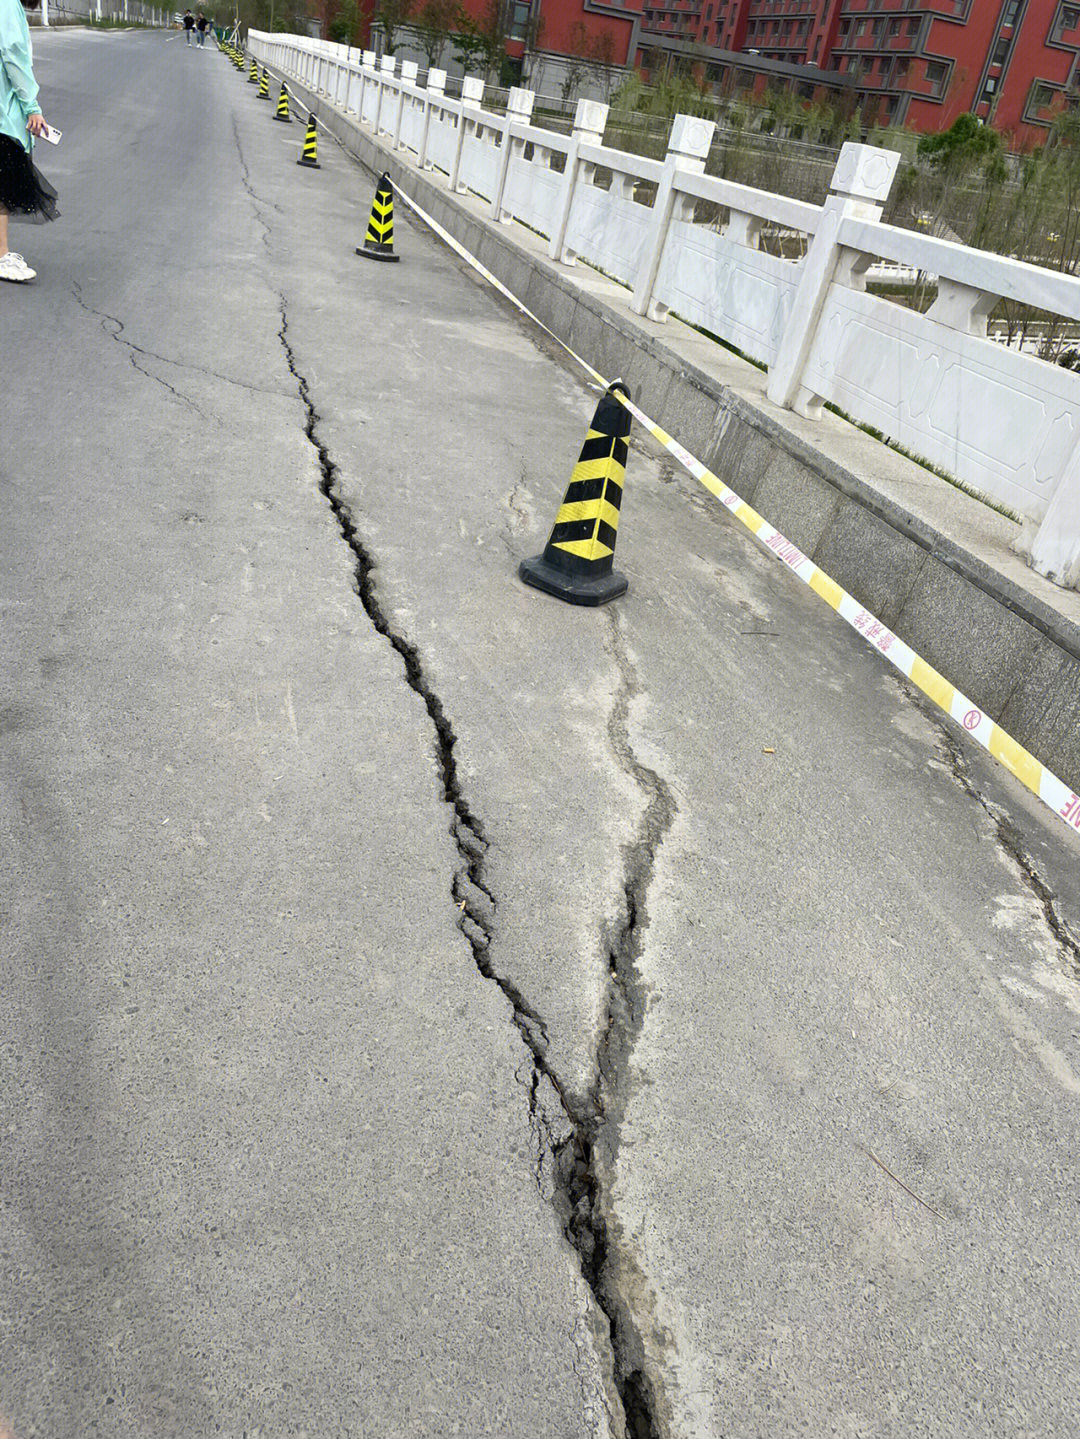 鹅公岩轨道大桥断裂图片